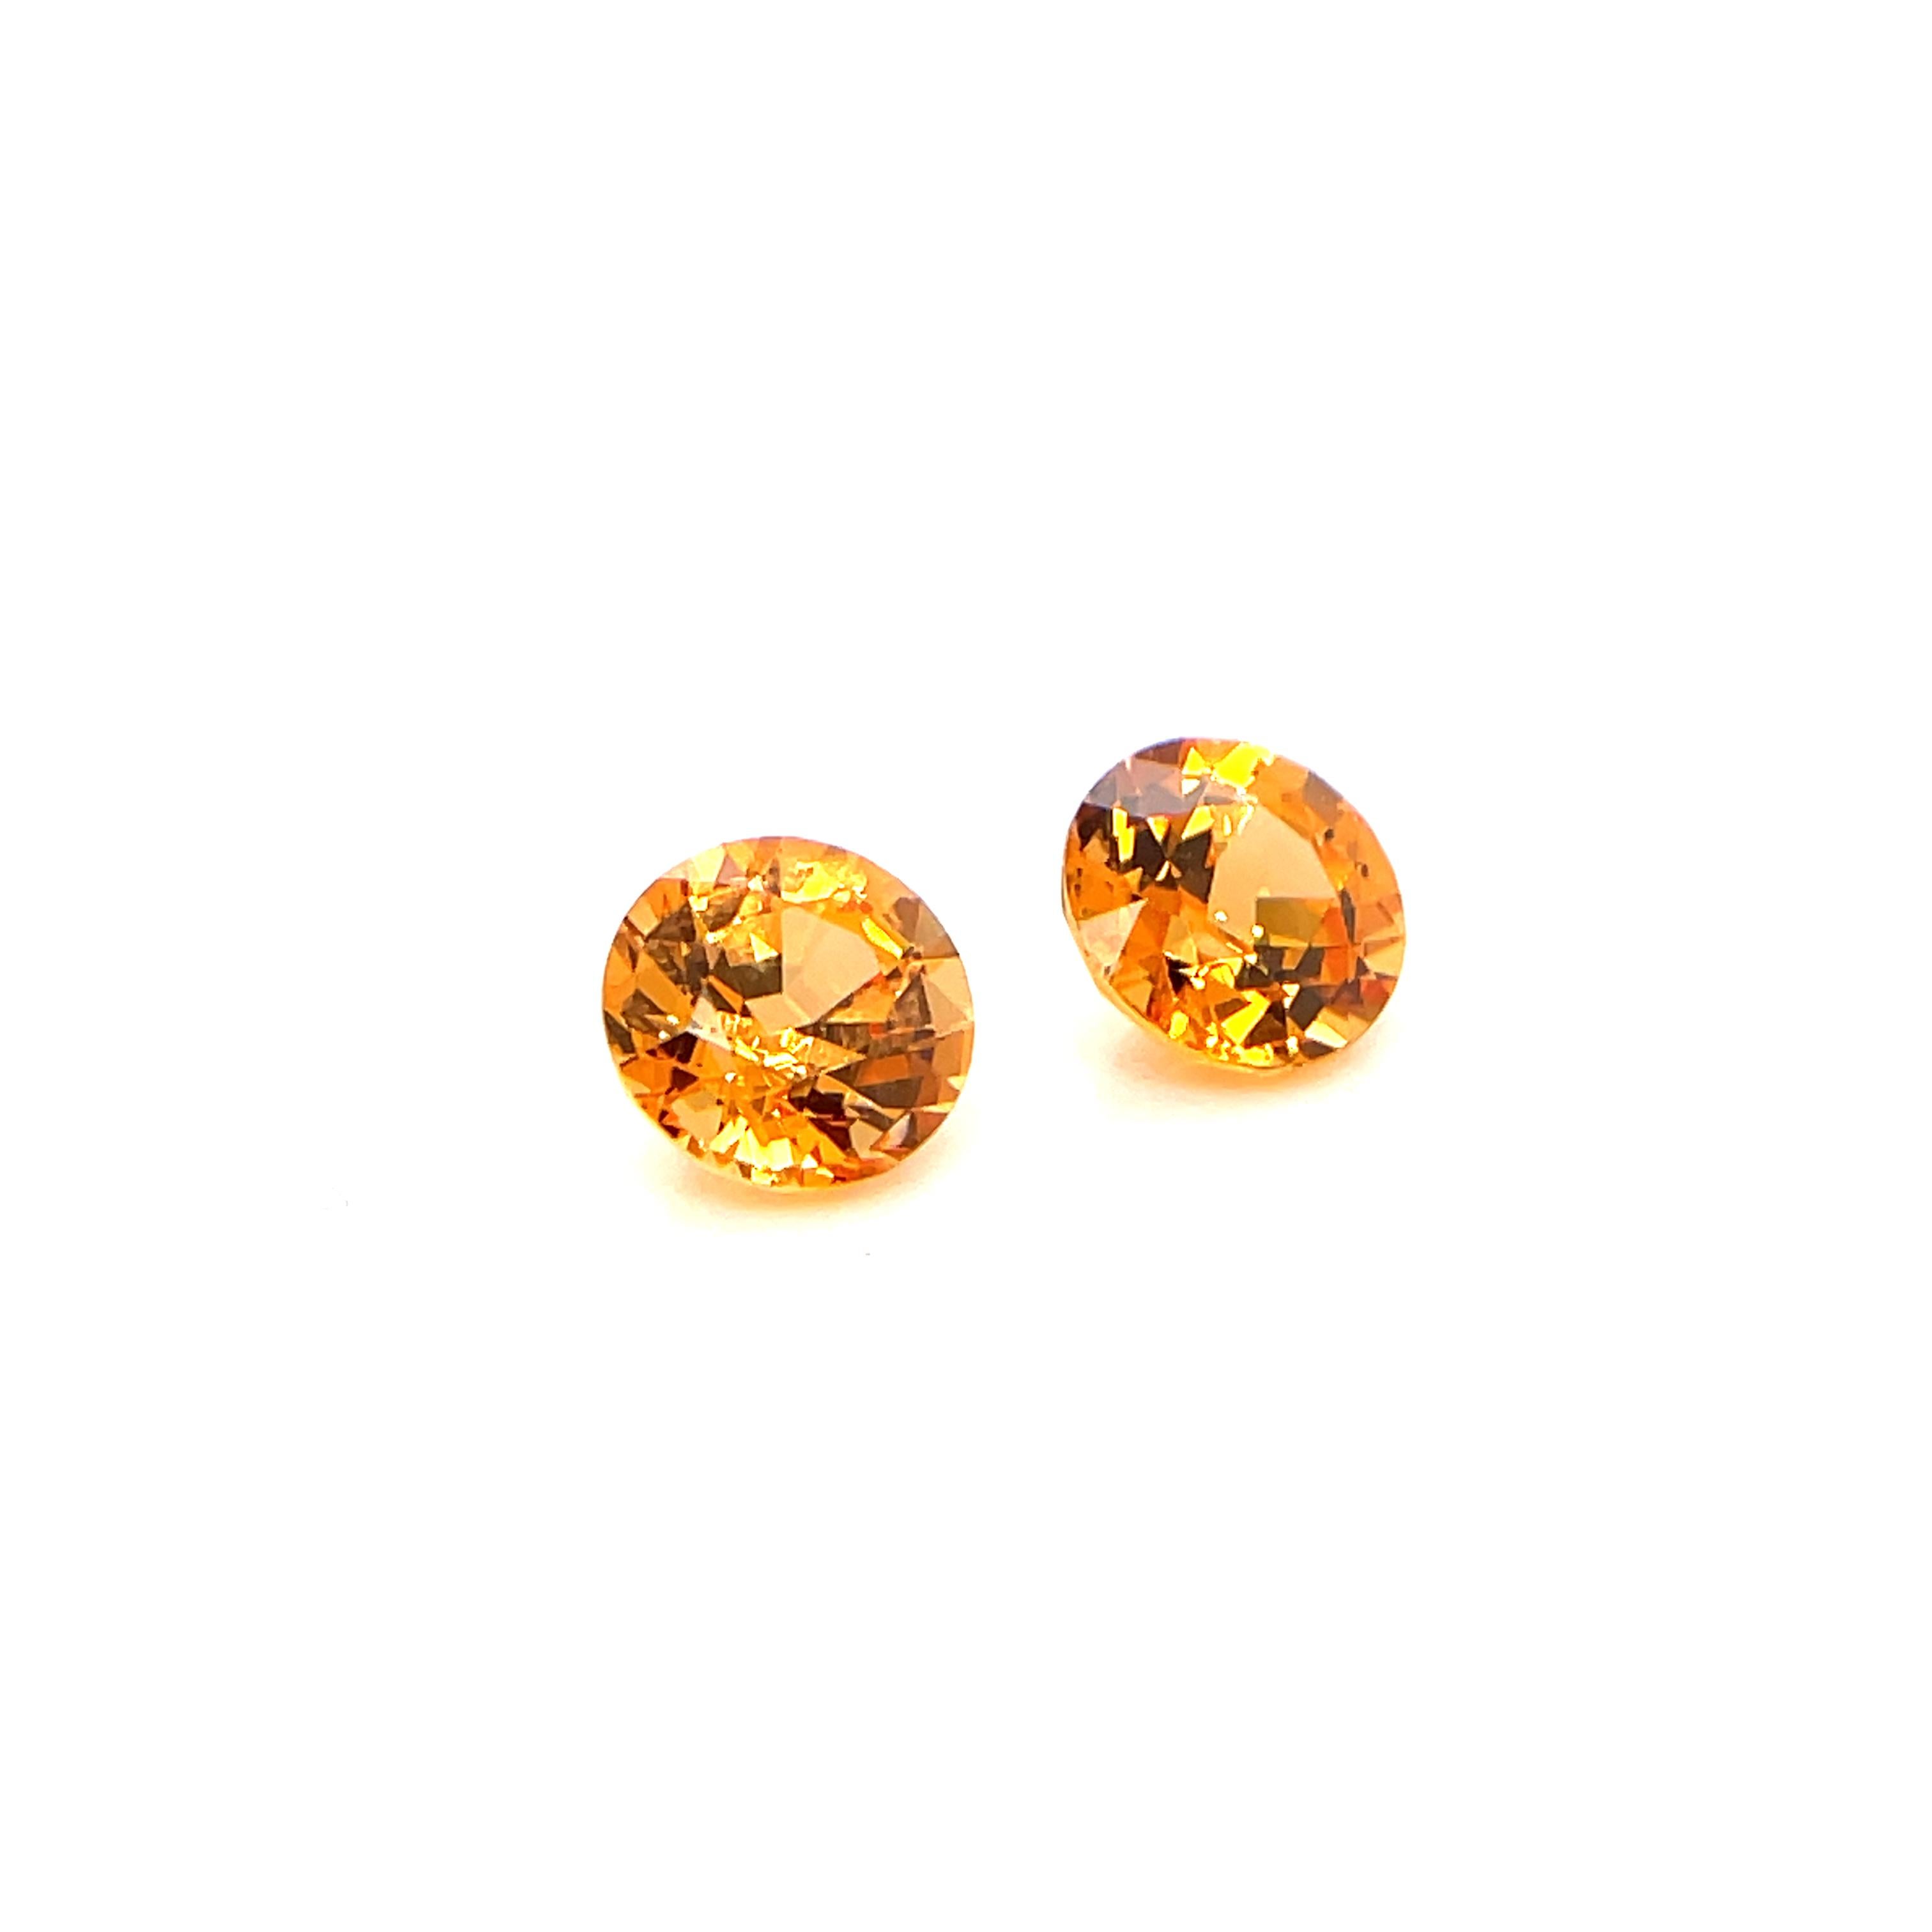 2 Round Mandarin Garnet Gemstones Cts 3.28 For Sale 2